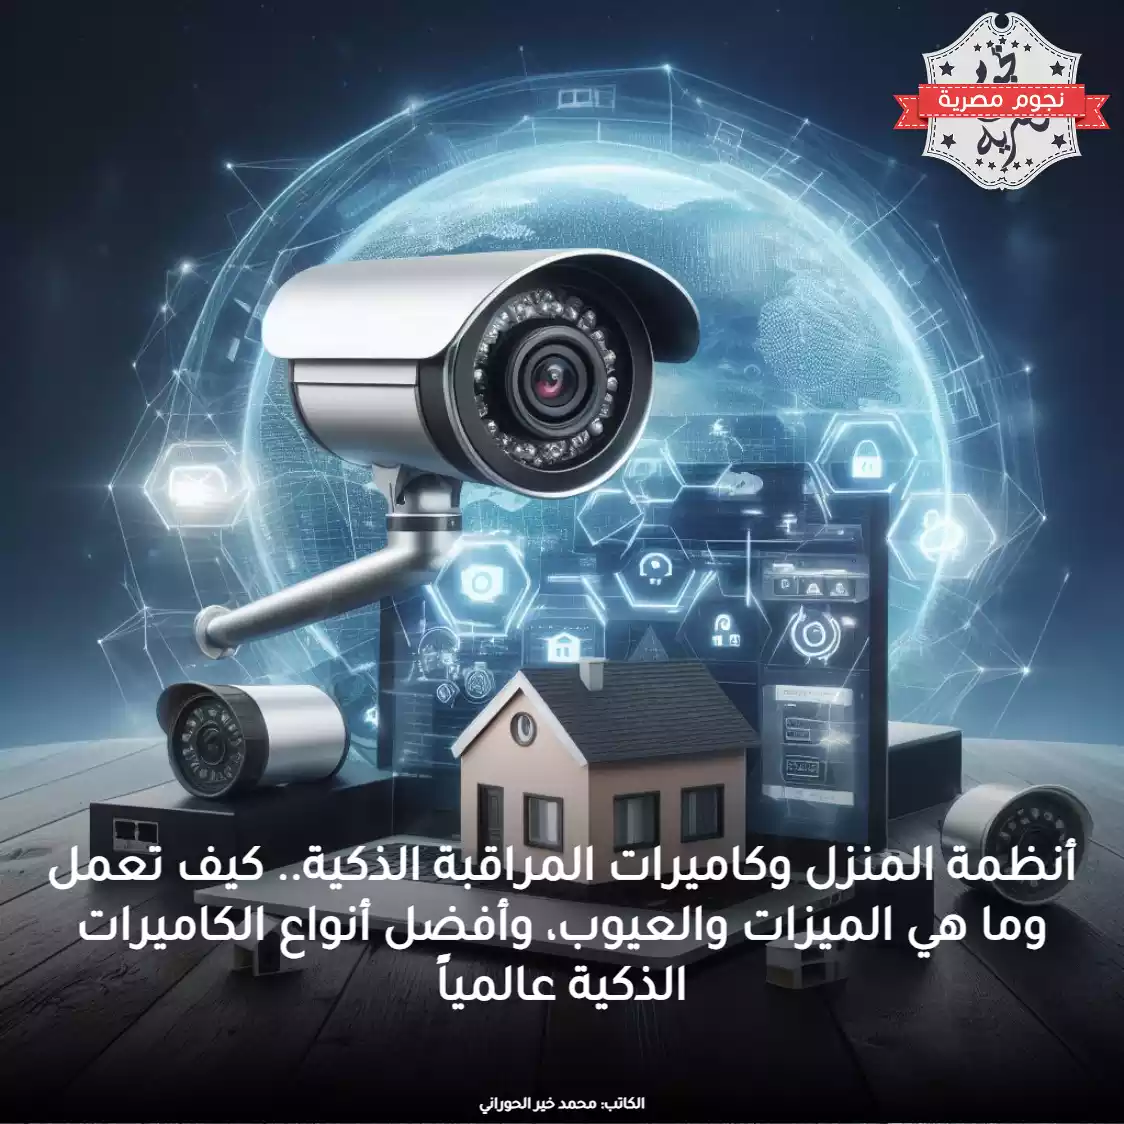 أنظمة المنزل وكاميرات المراقبة الذكية.. كيف تعمل وما هي الميزات والعيوب، وأفضل أنواع الكاميرات الذكية عالمياً